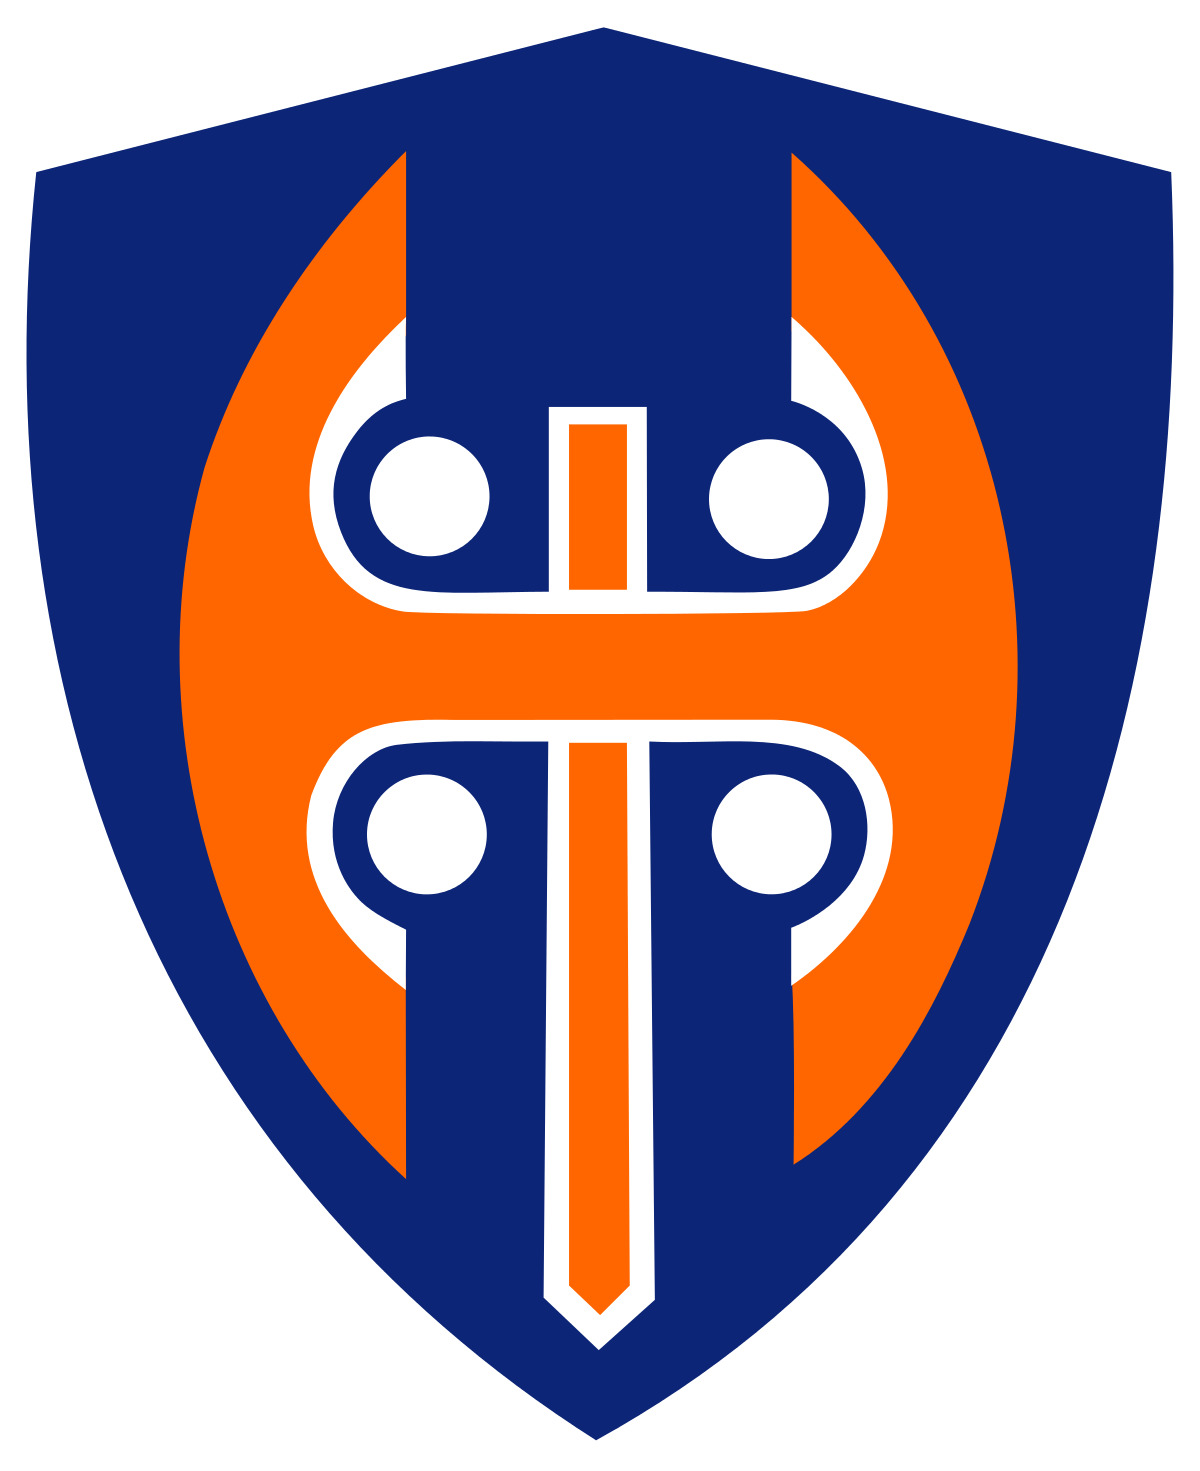 Tappara Tampere Logo icons